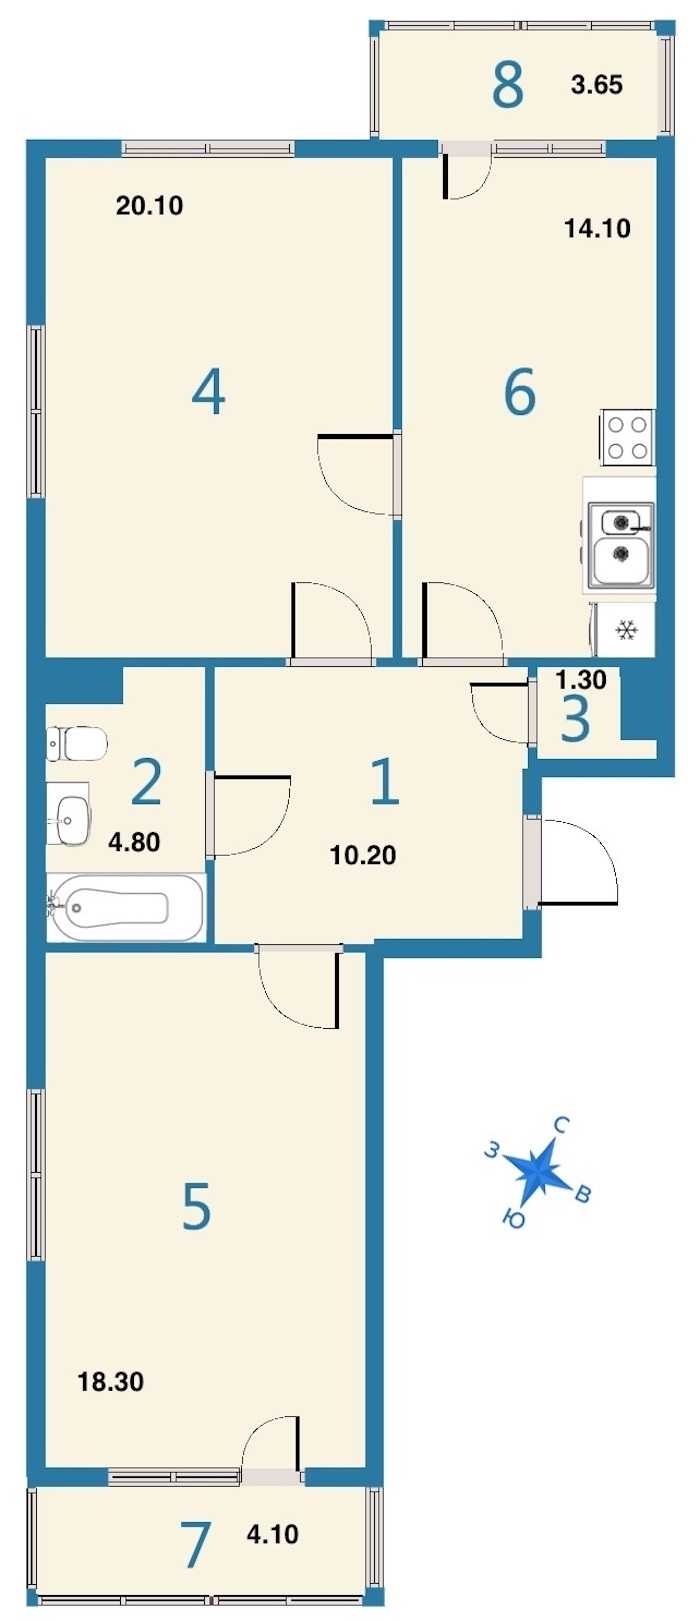 Двухкомнатная квартира в : площадь 73.3 м2 , этаж: 11 – купить в Санкт-Петербурге